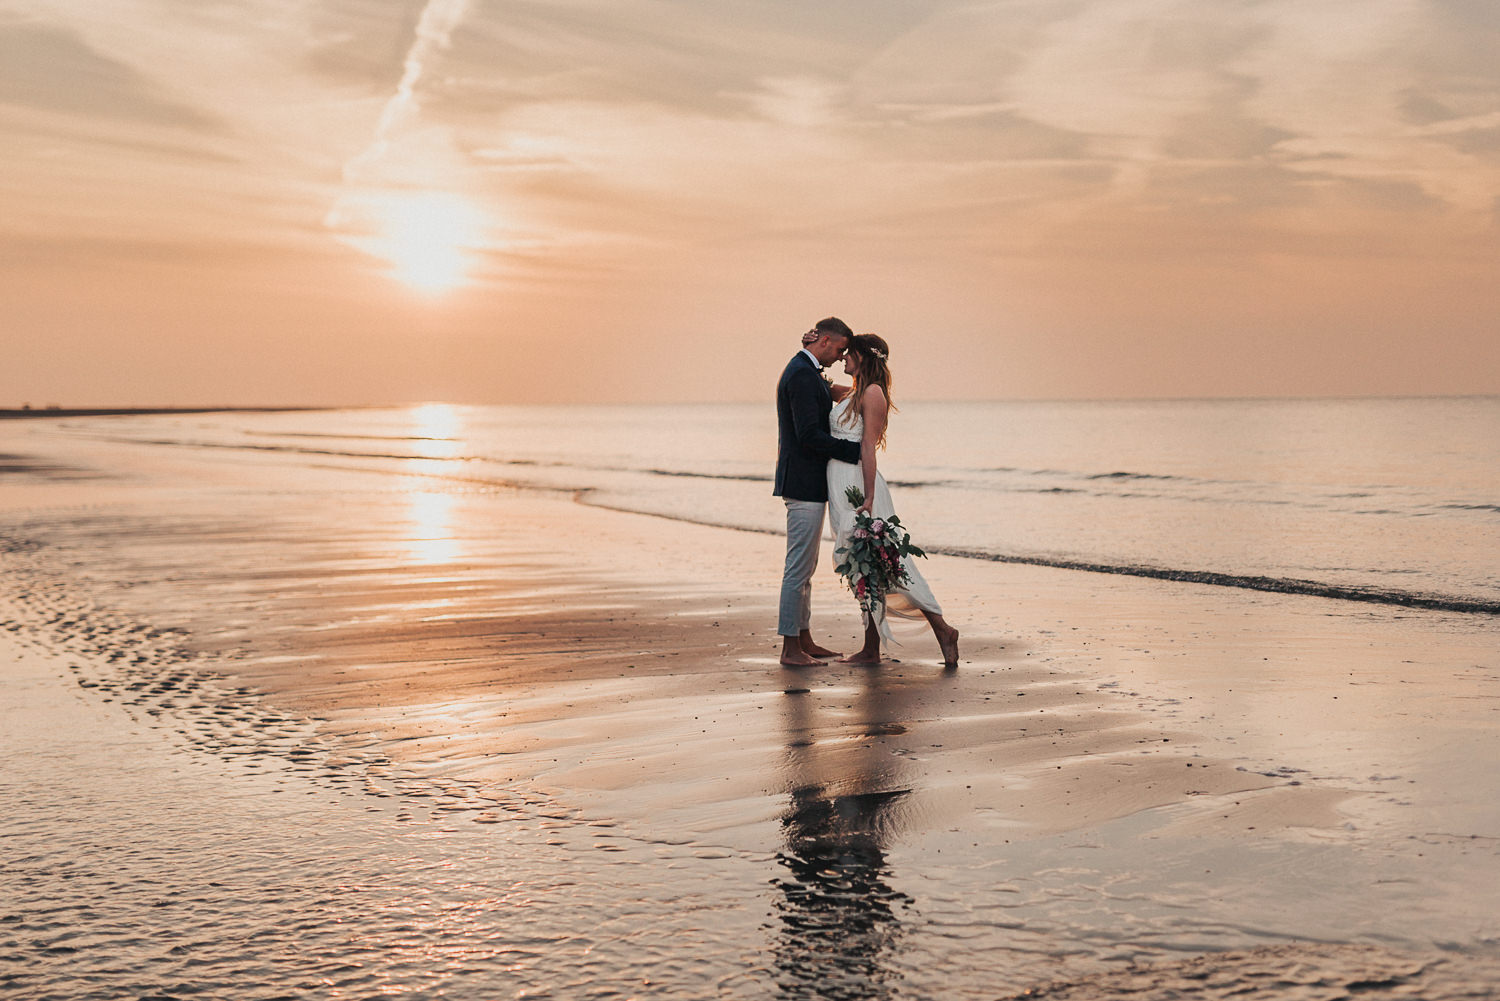 Strandhochzeit Niederlande, Strandhochzeit Holland, Hochzeitsfotograf, Beach wedding